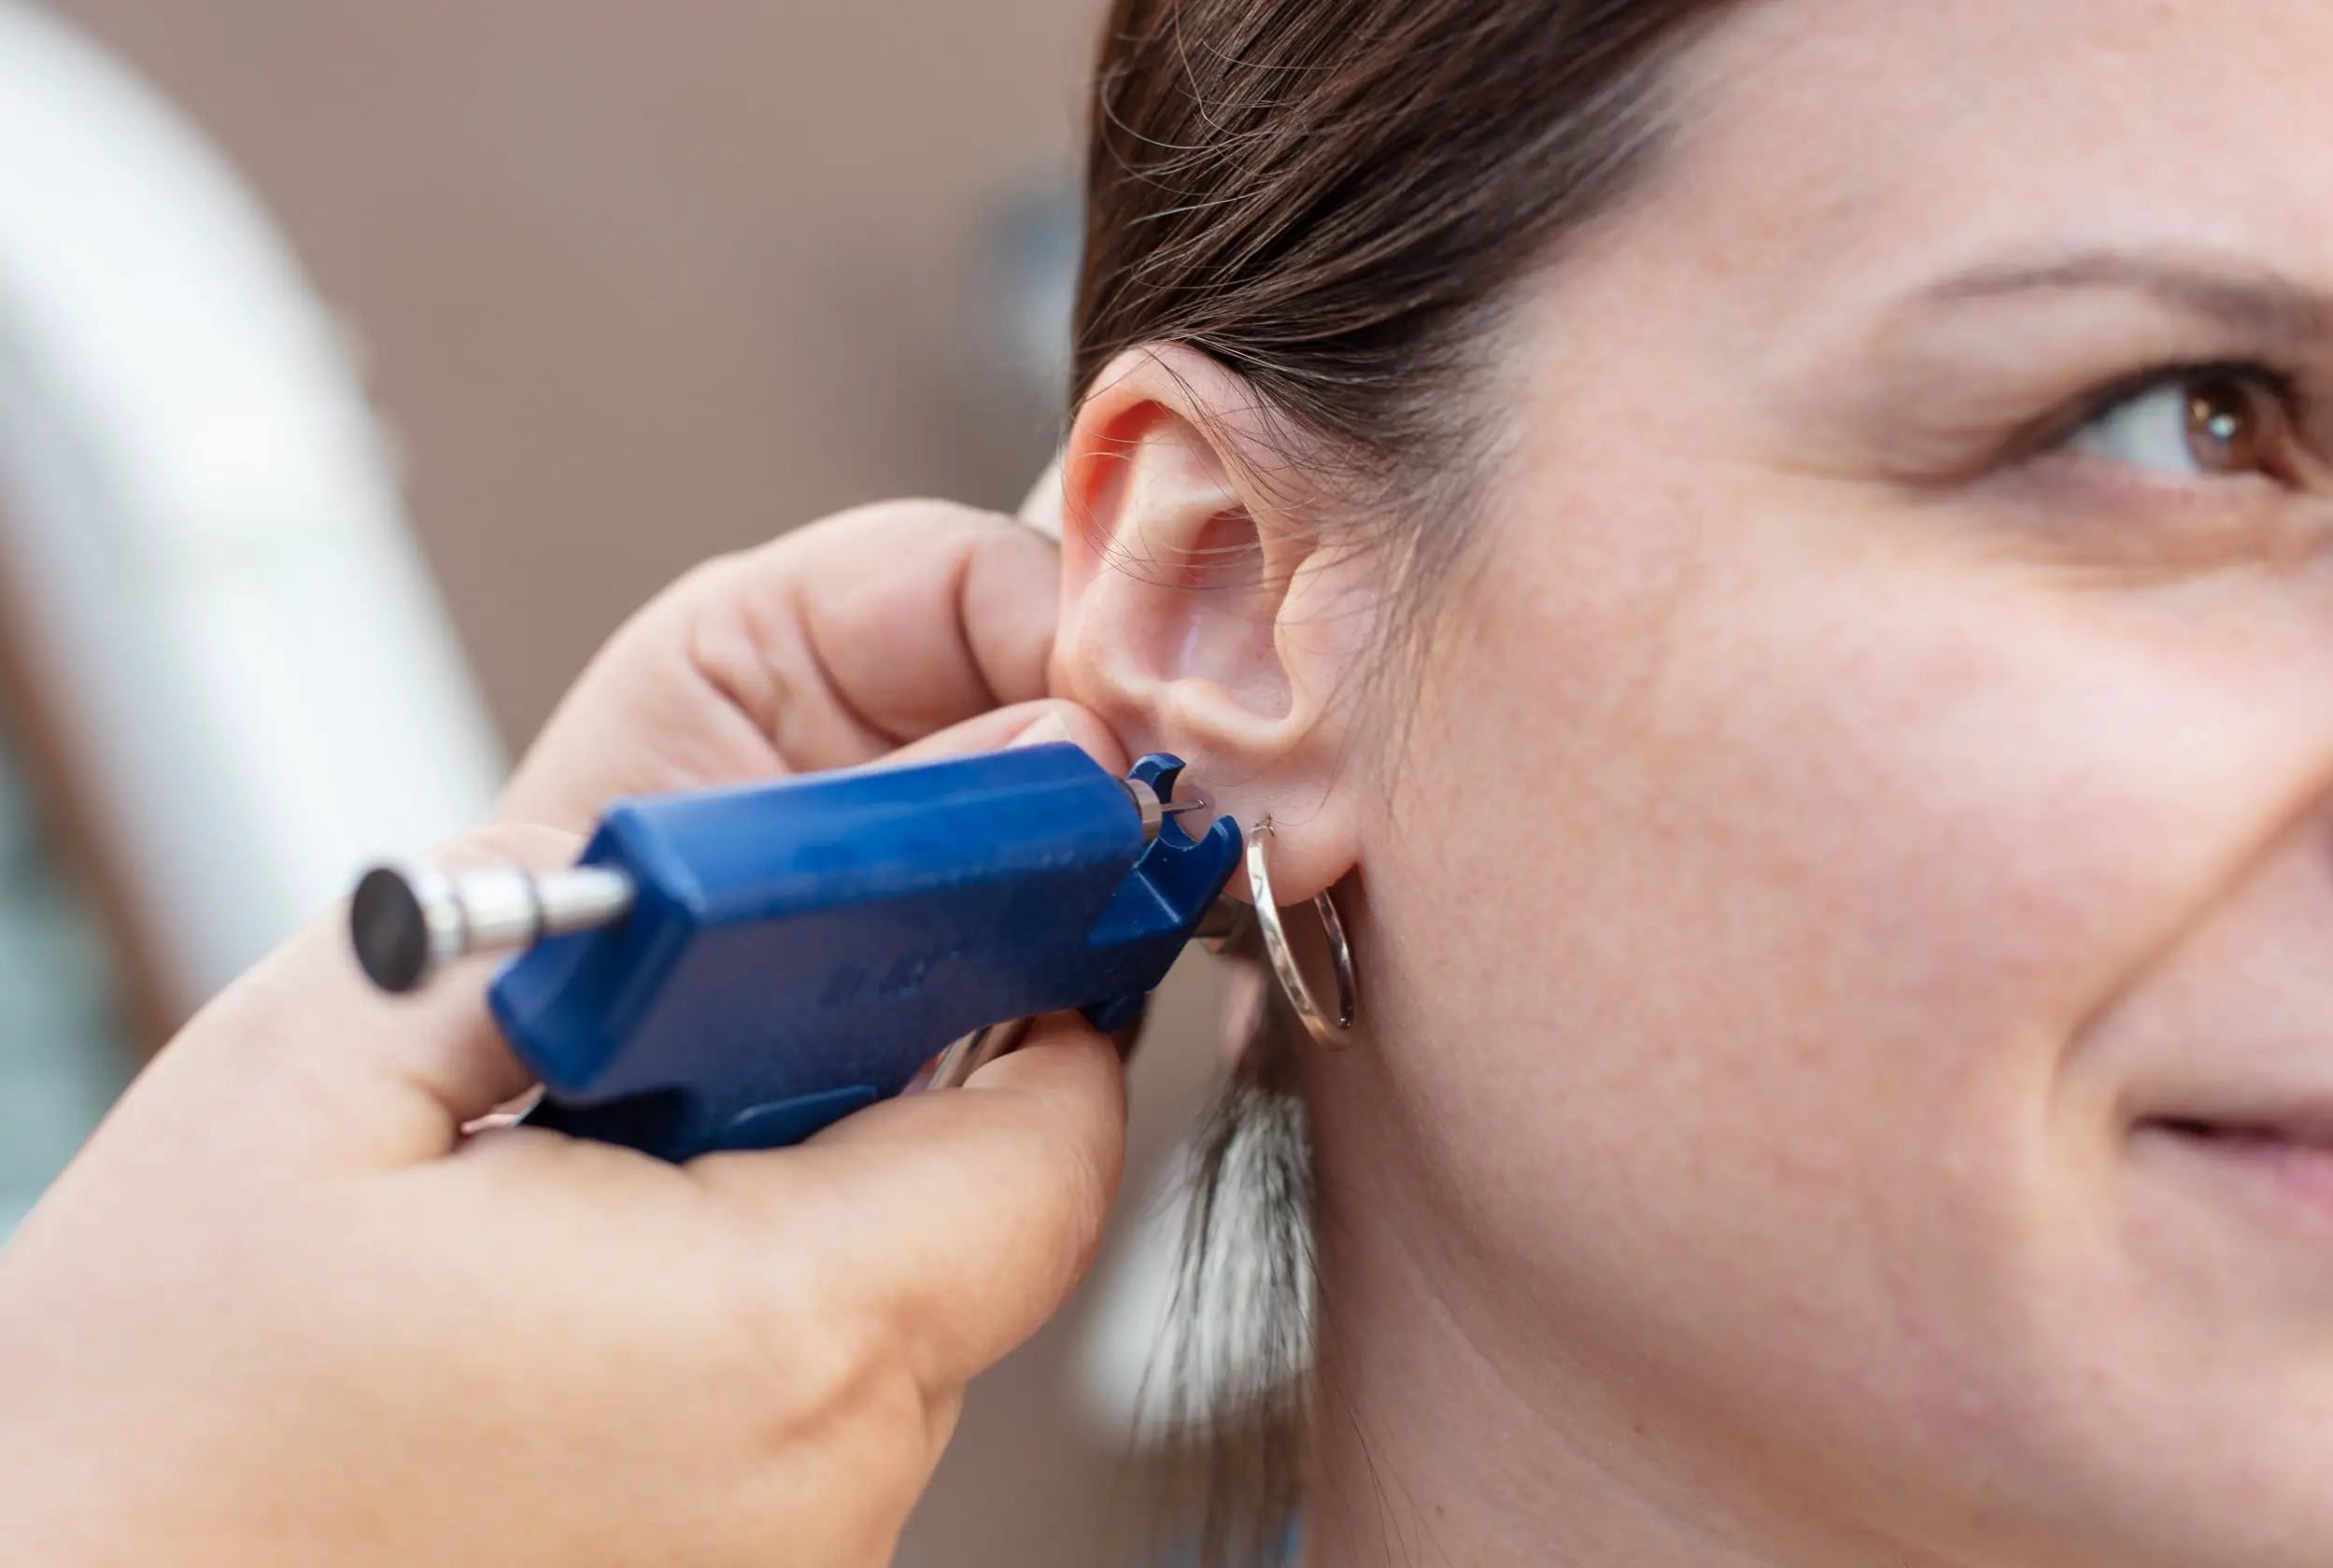 Woman having ear piercing process